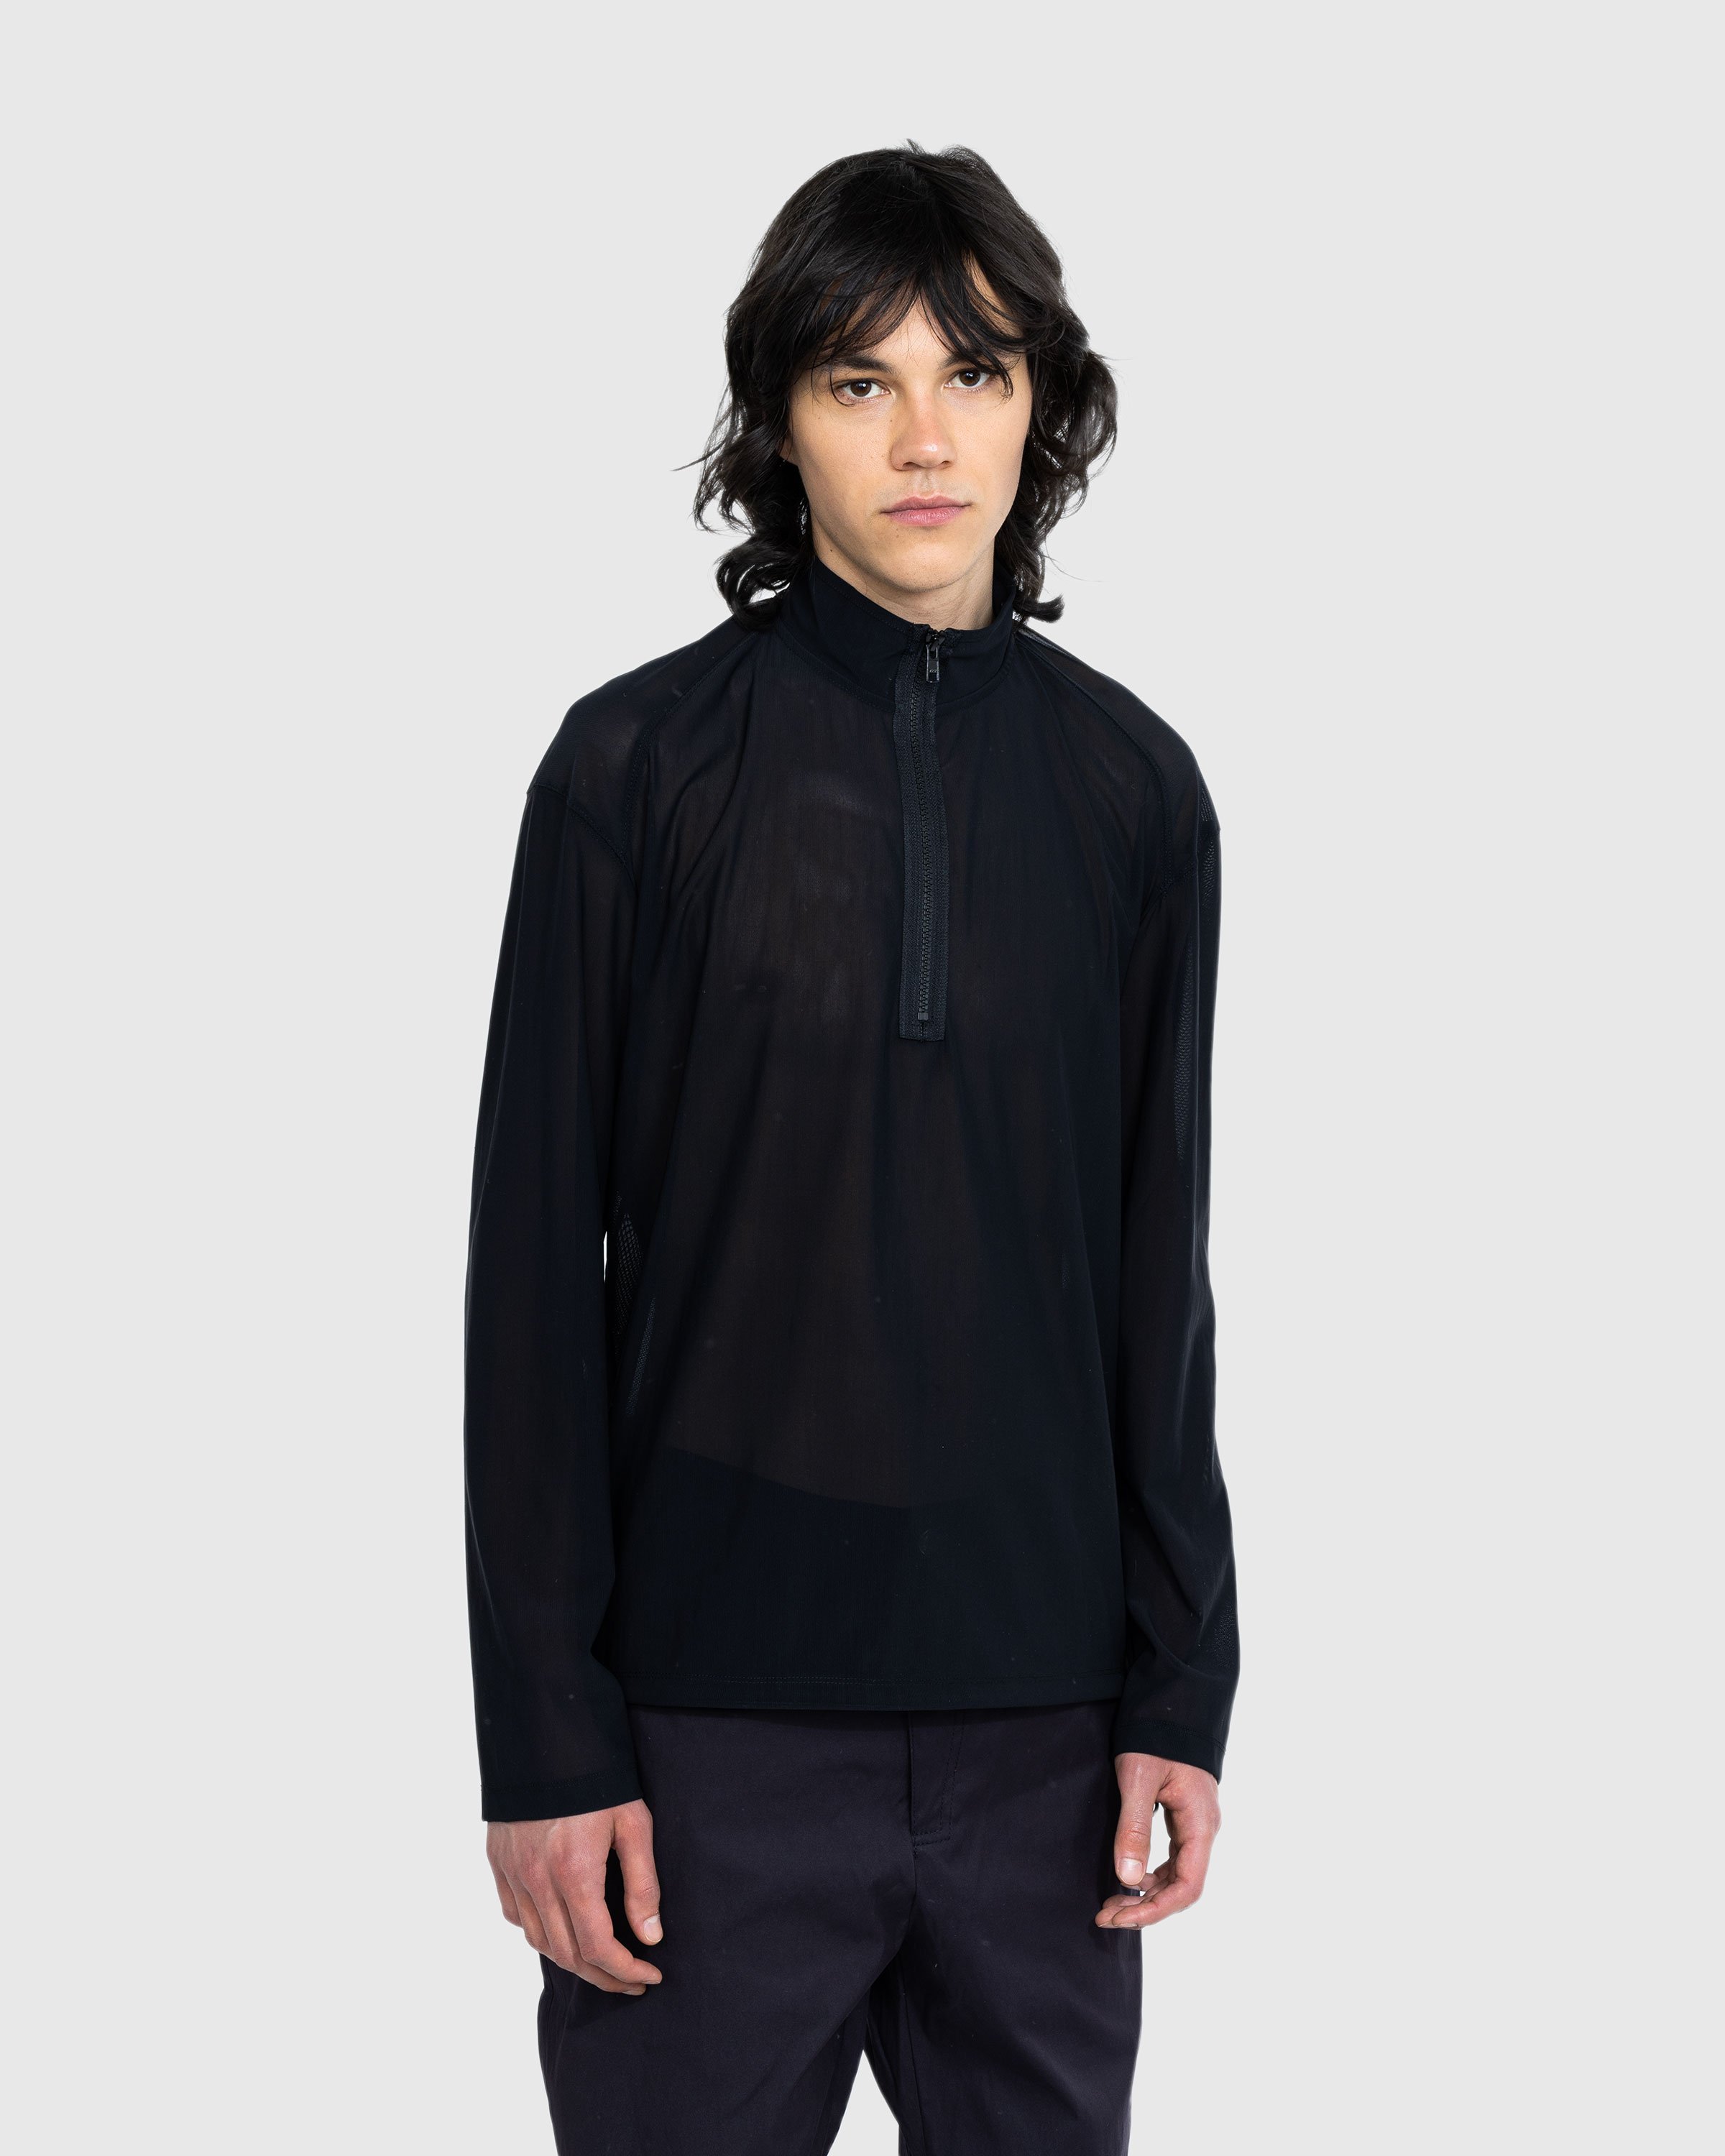 AFFXWRKS - Transit Mesh Pullover Black - Clothing - Black - Image 2